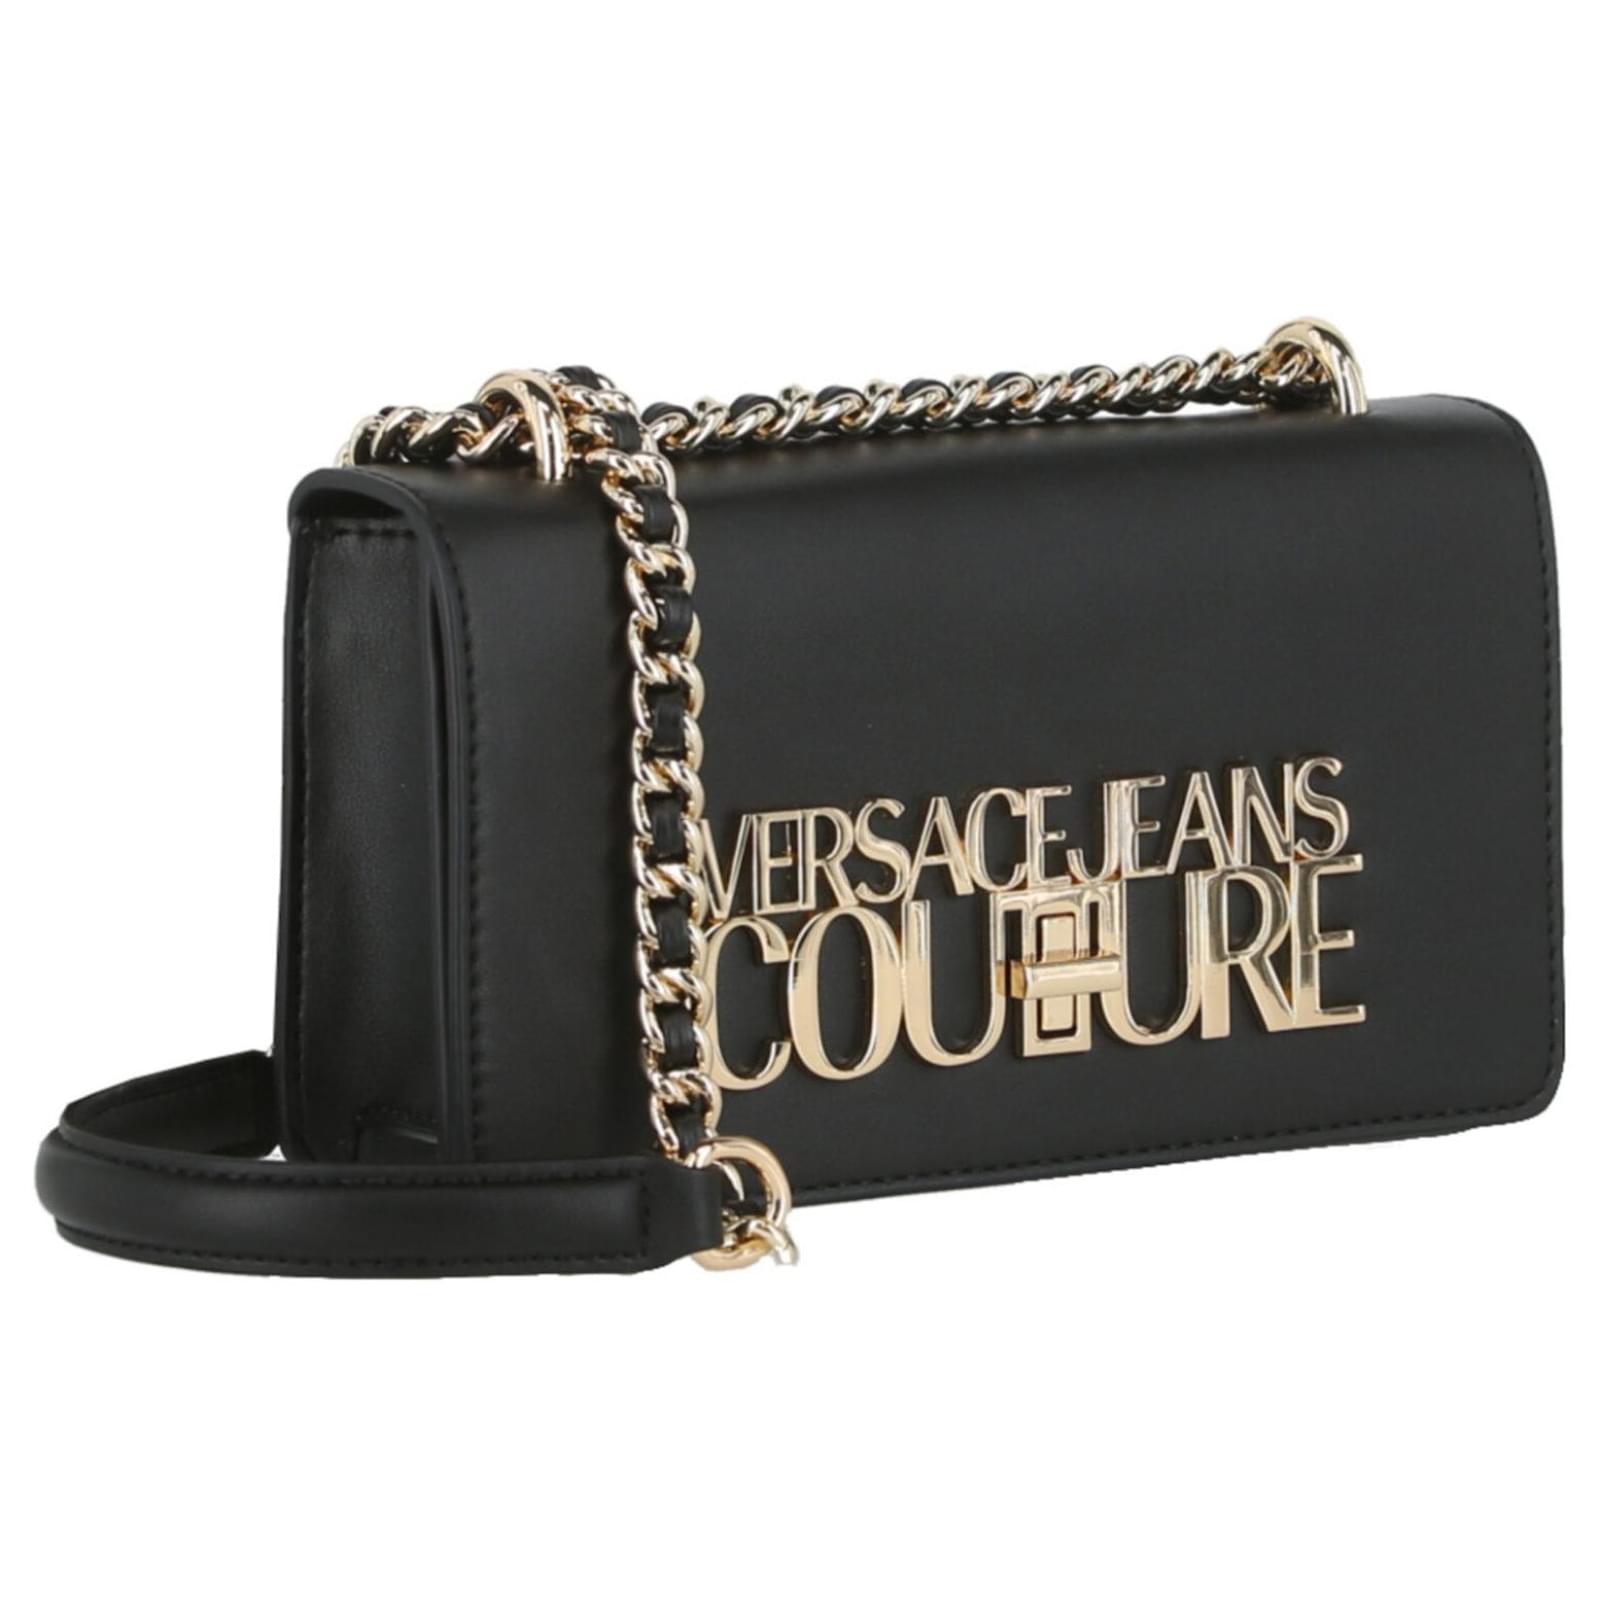 logo-plaque shoulder bag, Versace Jeans Couture